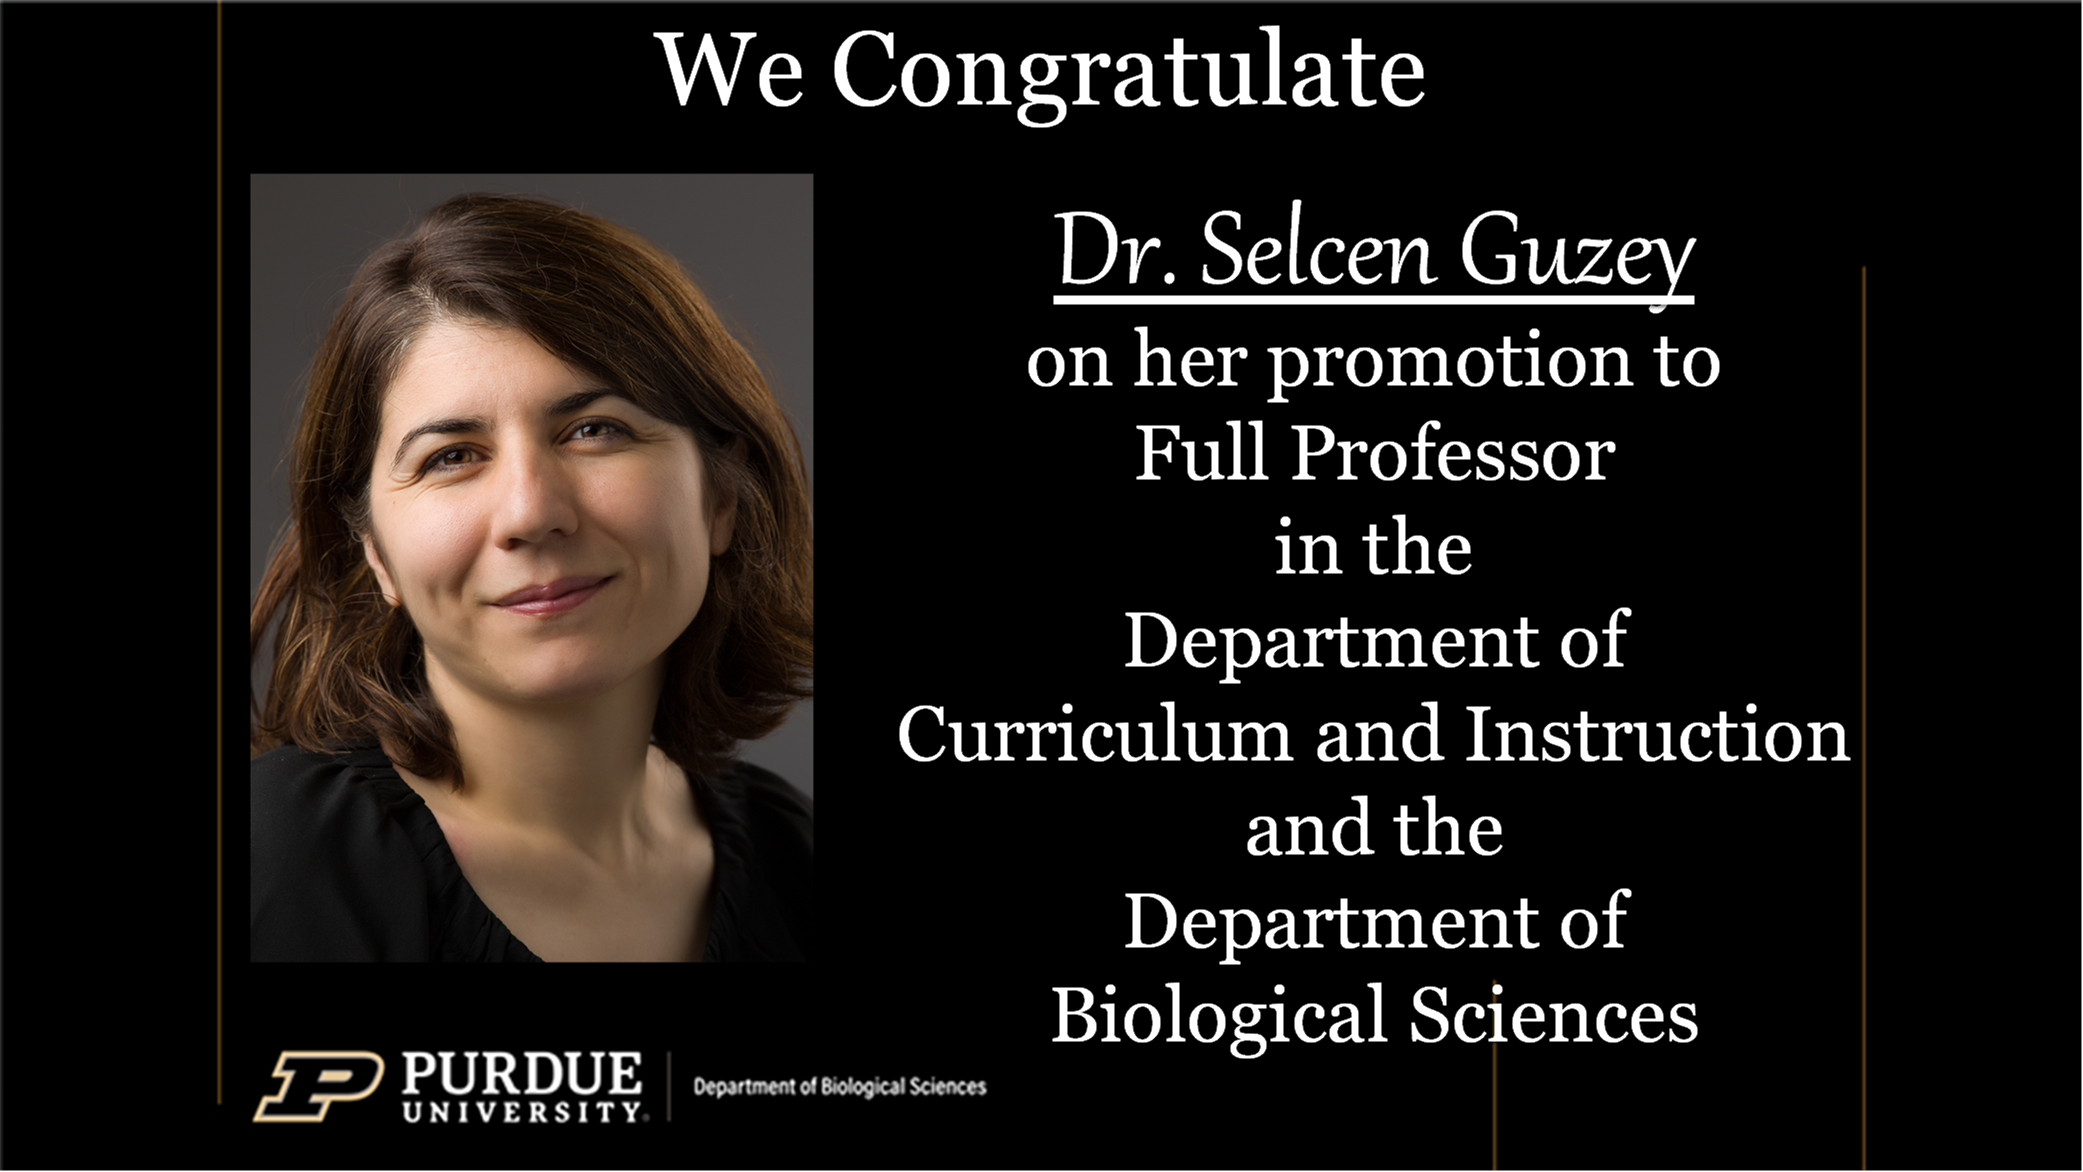 Dr. Selzen Guzey